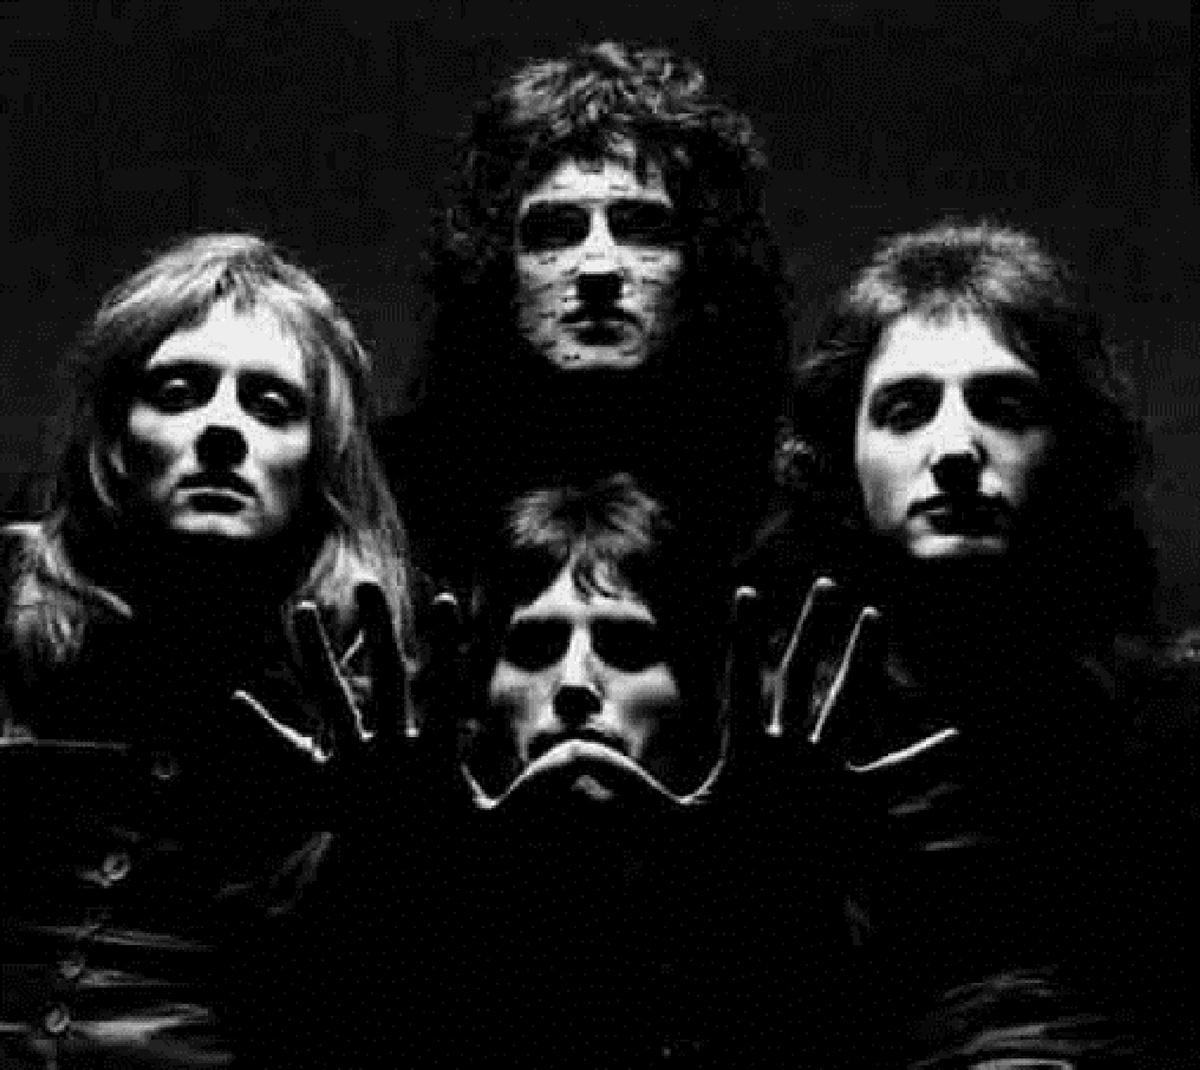 Queen Bohemian Rhapsody Wallpaper